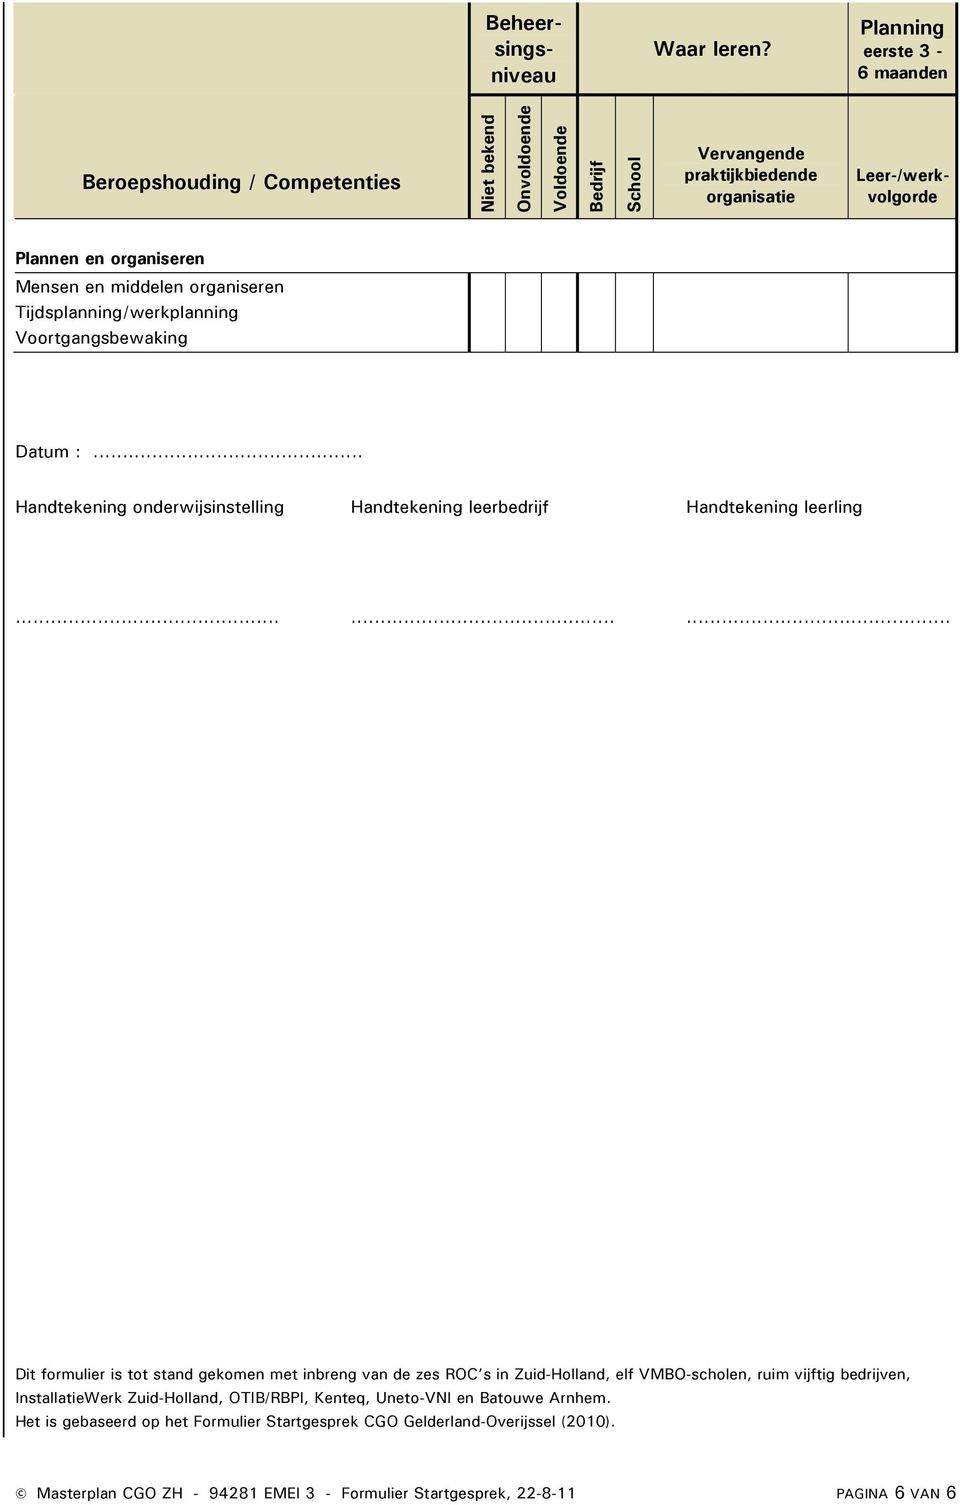 ........ Dit formulier is tot stand gekomen met inbreng van de zes ROC s in Zuid-Holland, elf VMBO-scholen, ruim vijftig bedrijven, InstallatieWerk